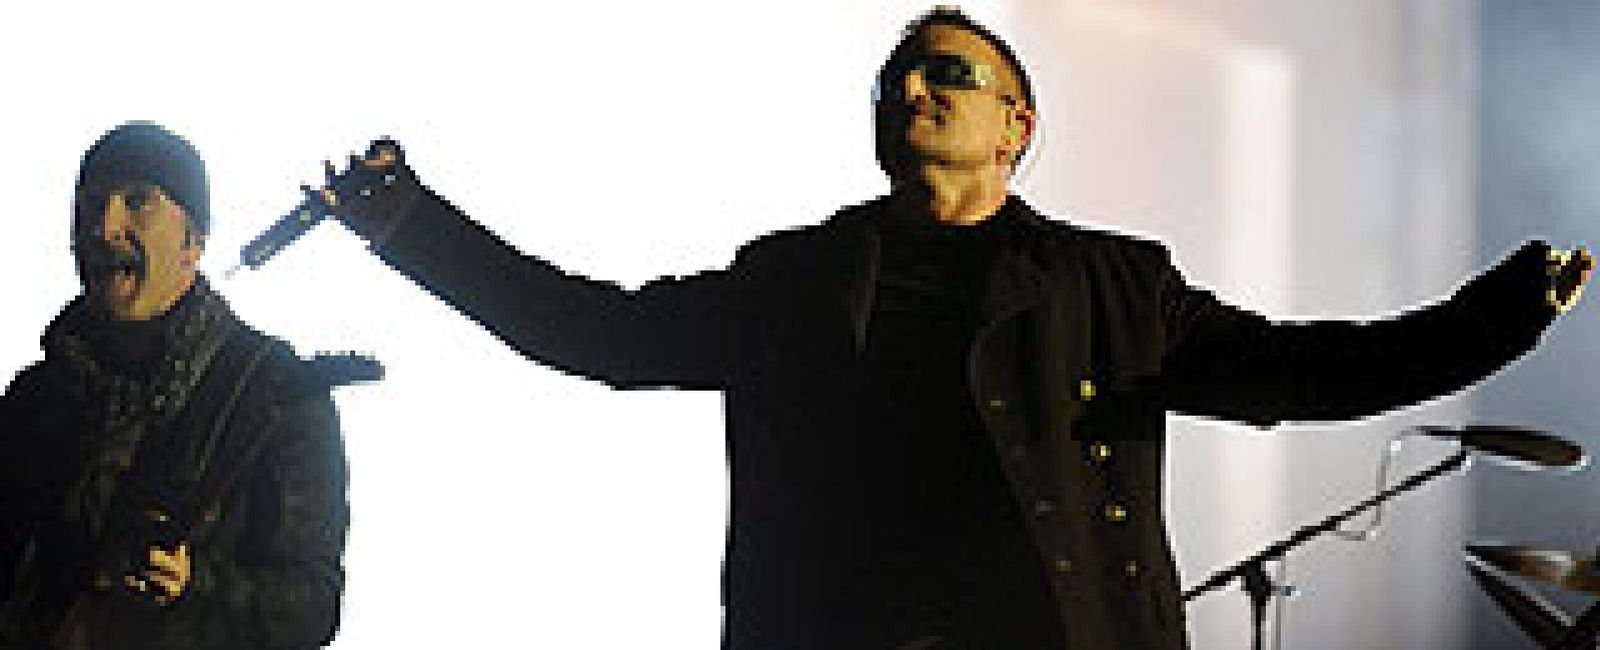 Foto: U2 vuelve a los escenarios dentro de tres semanas